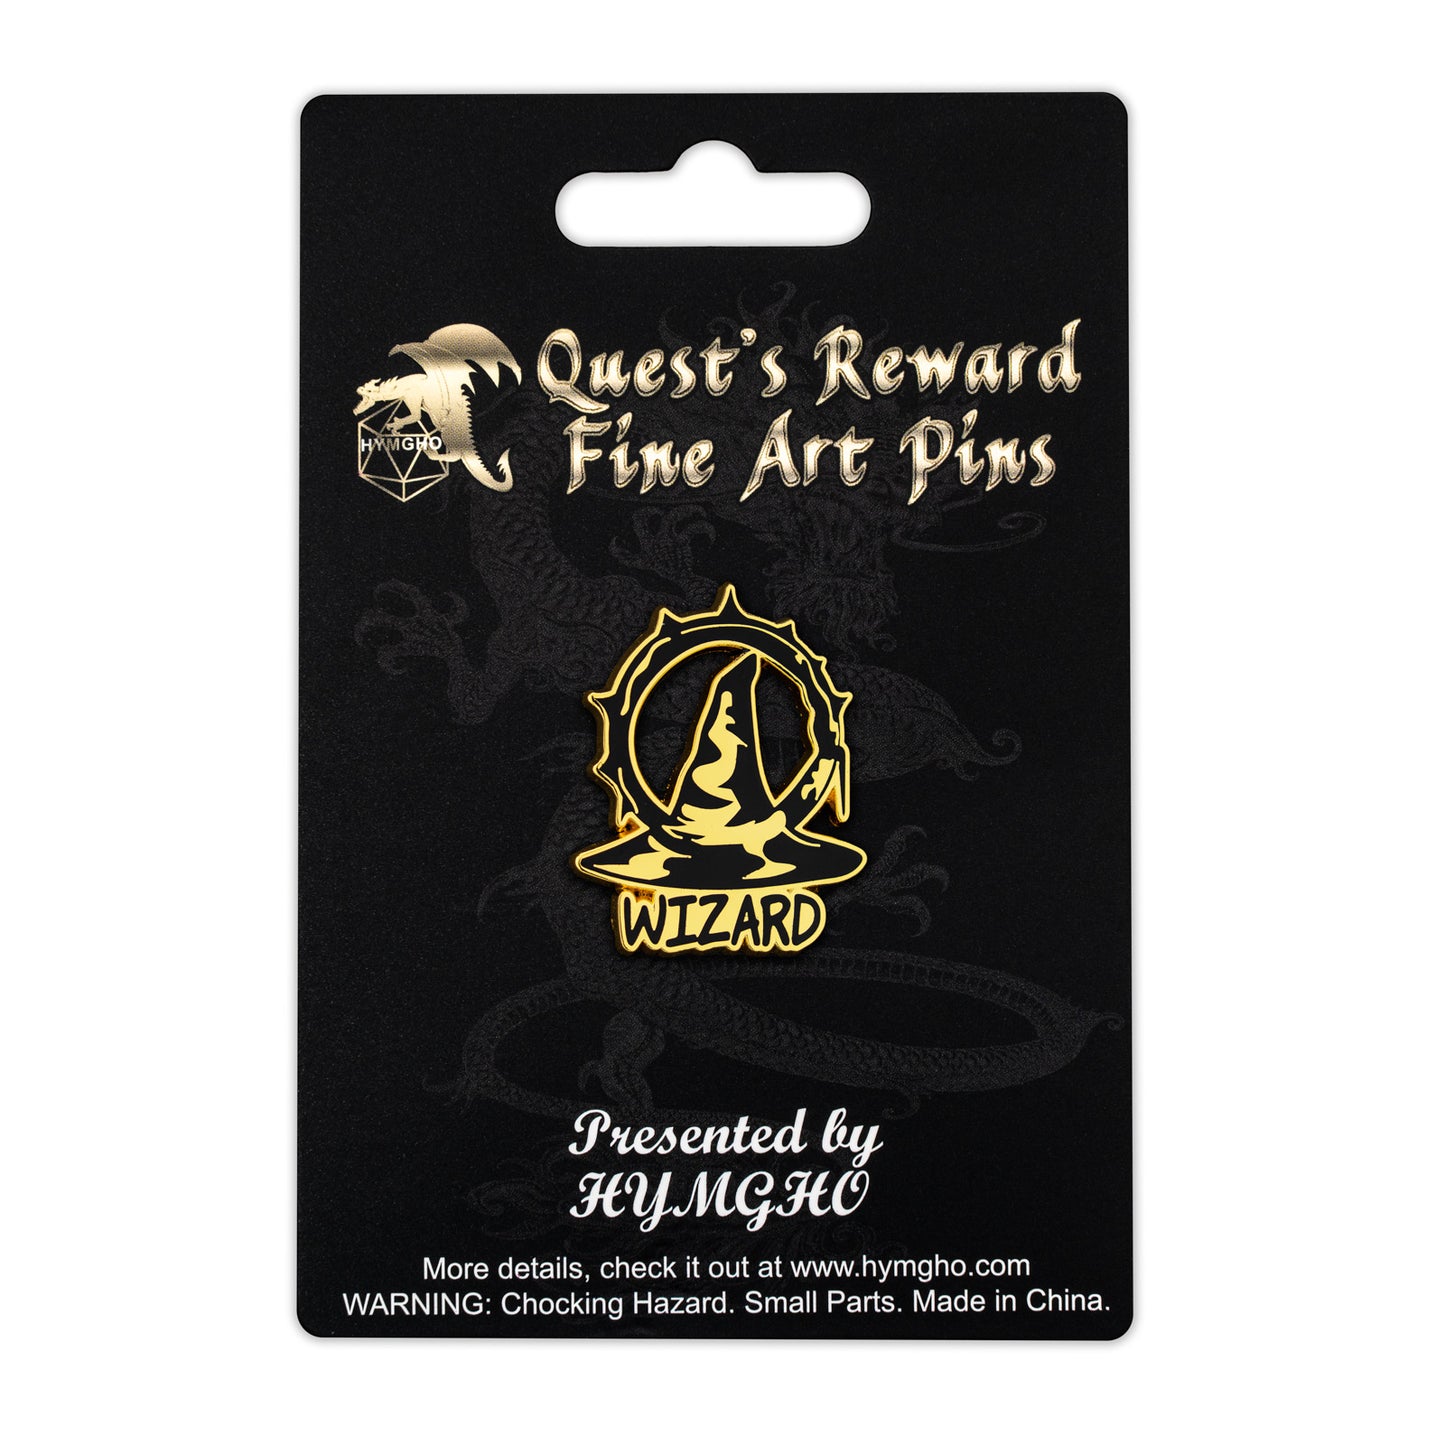 Quest's Reward Fine Art Class Pins: WIZARDS